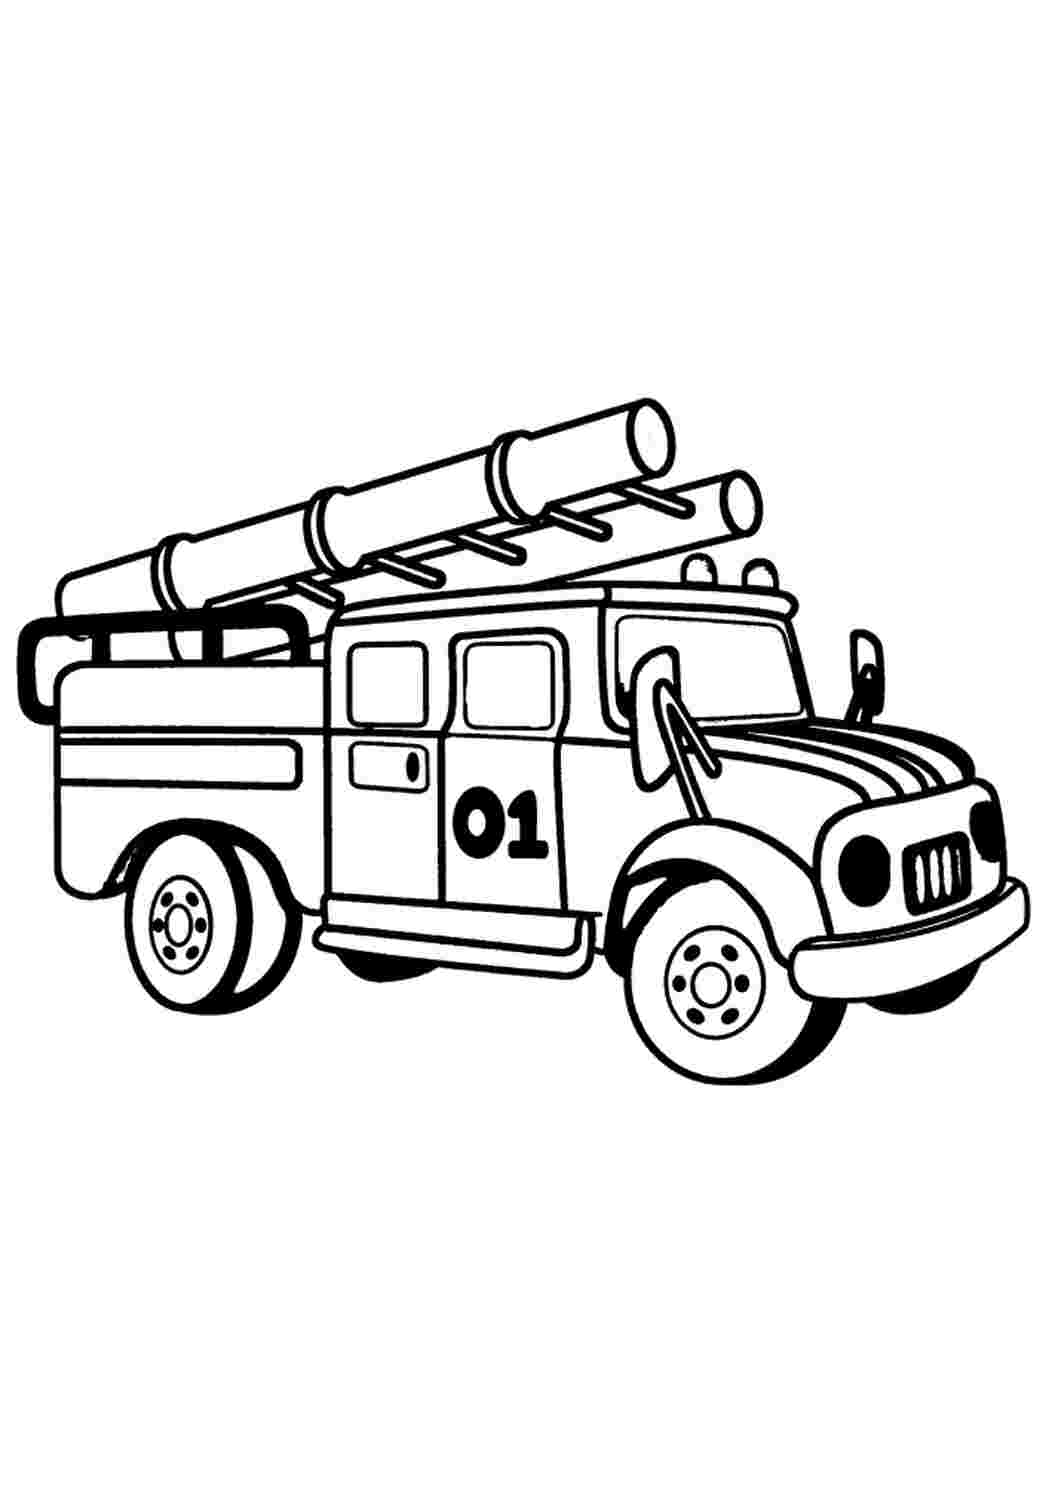 Раскраски Пожарная машина. Распечатать для детей